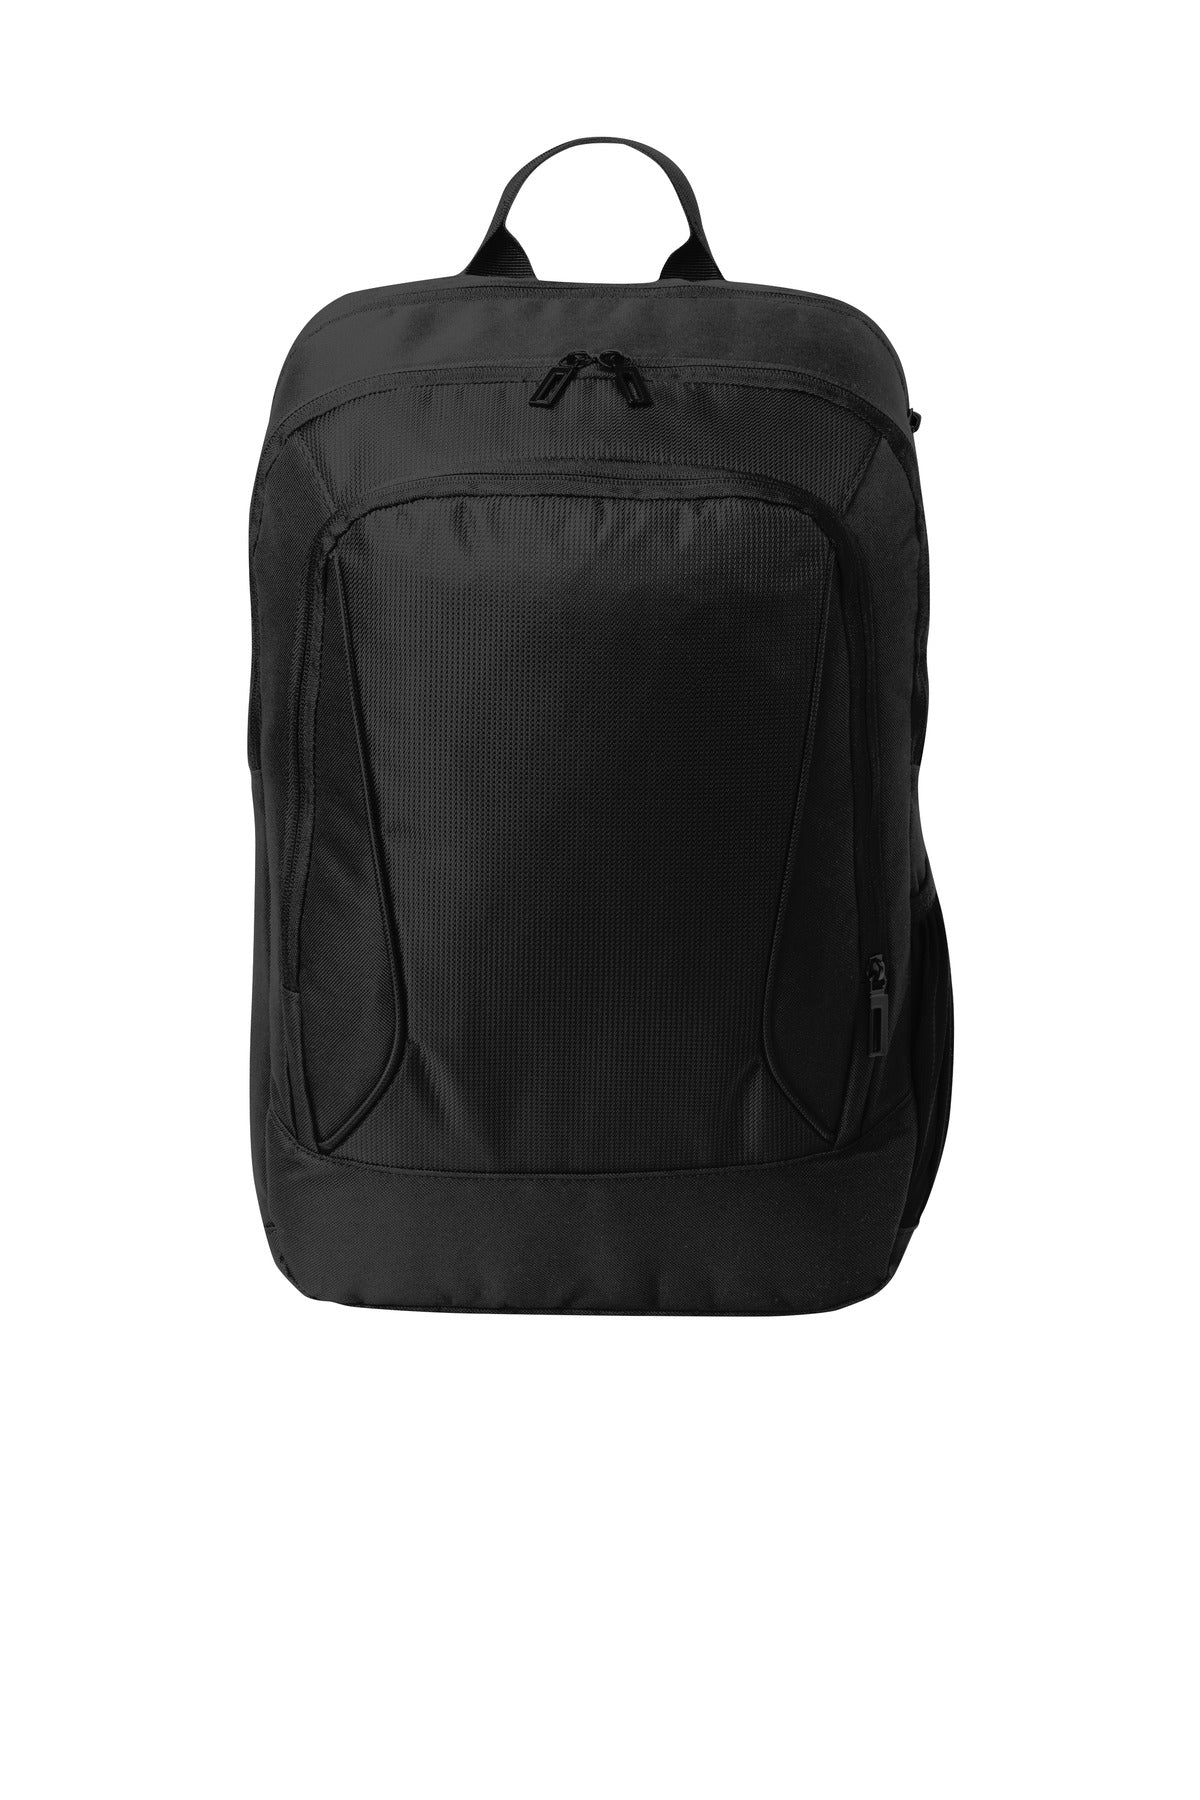 Port Authority ® City Backpack. BG222 - DFW Impression